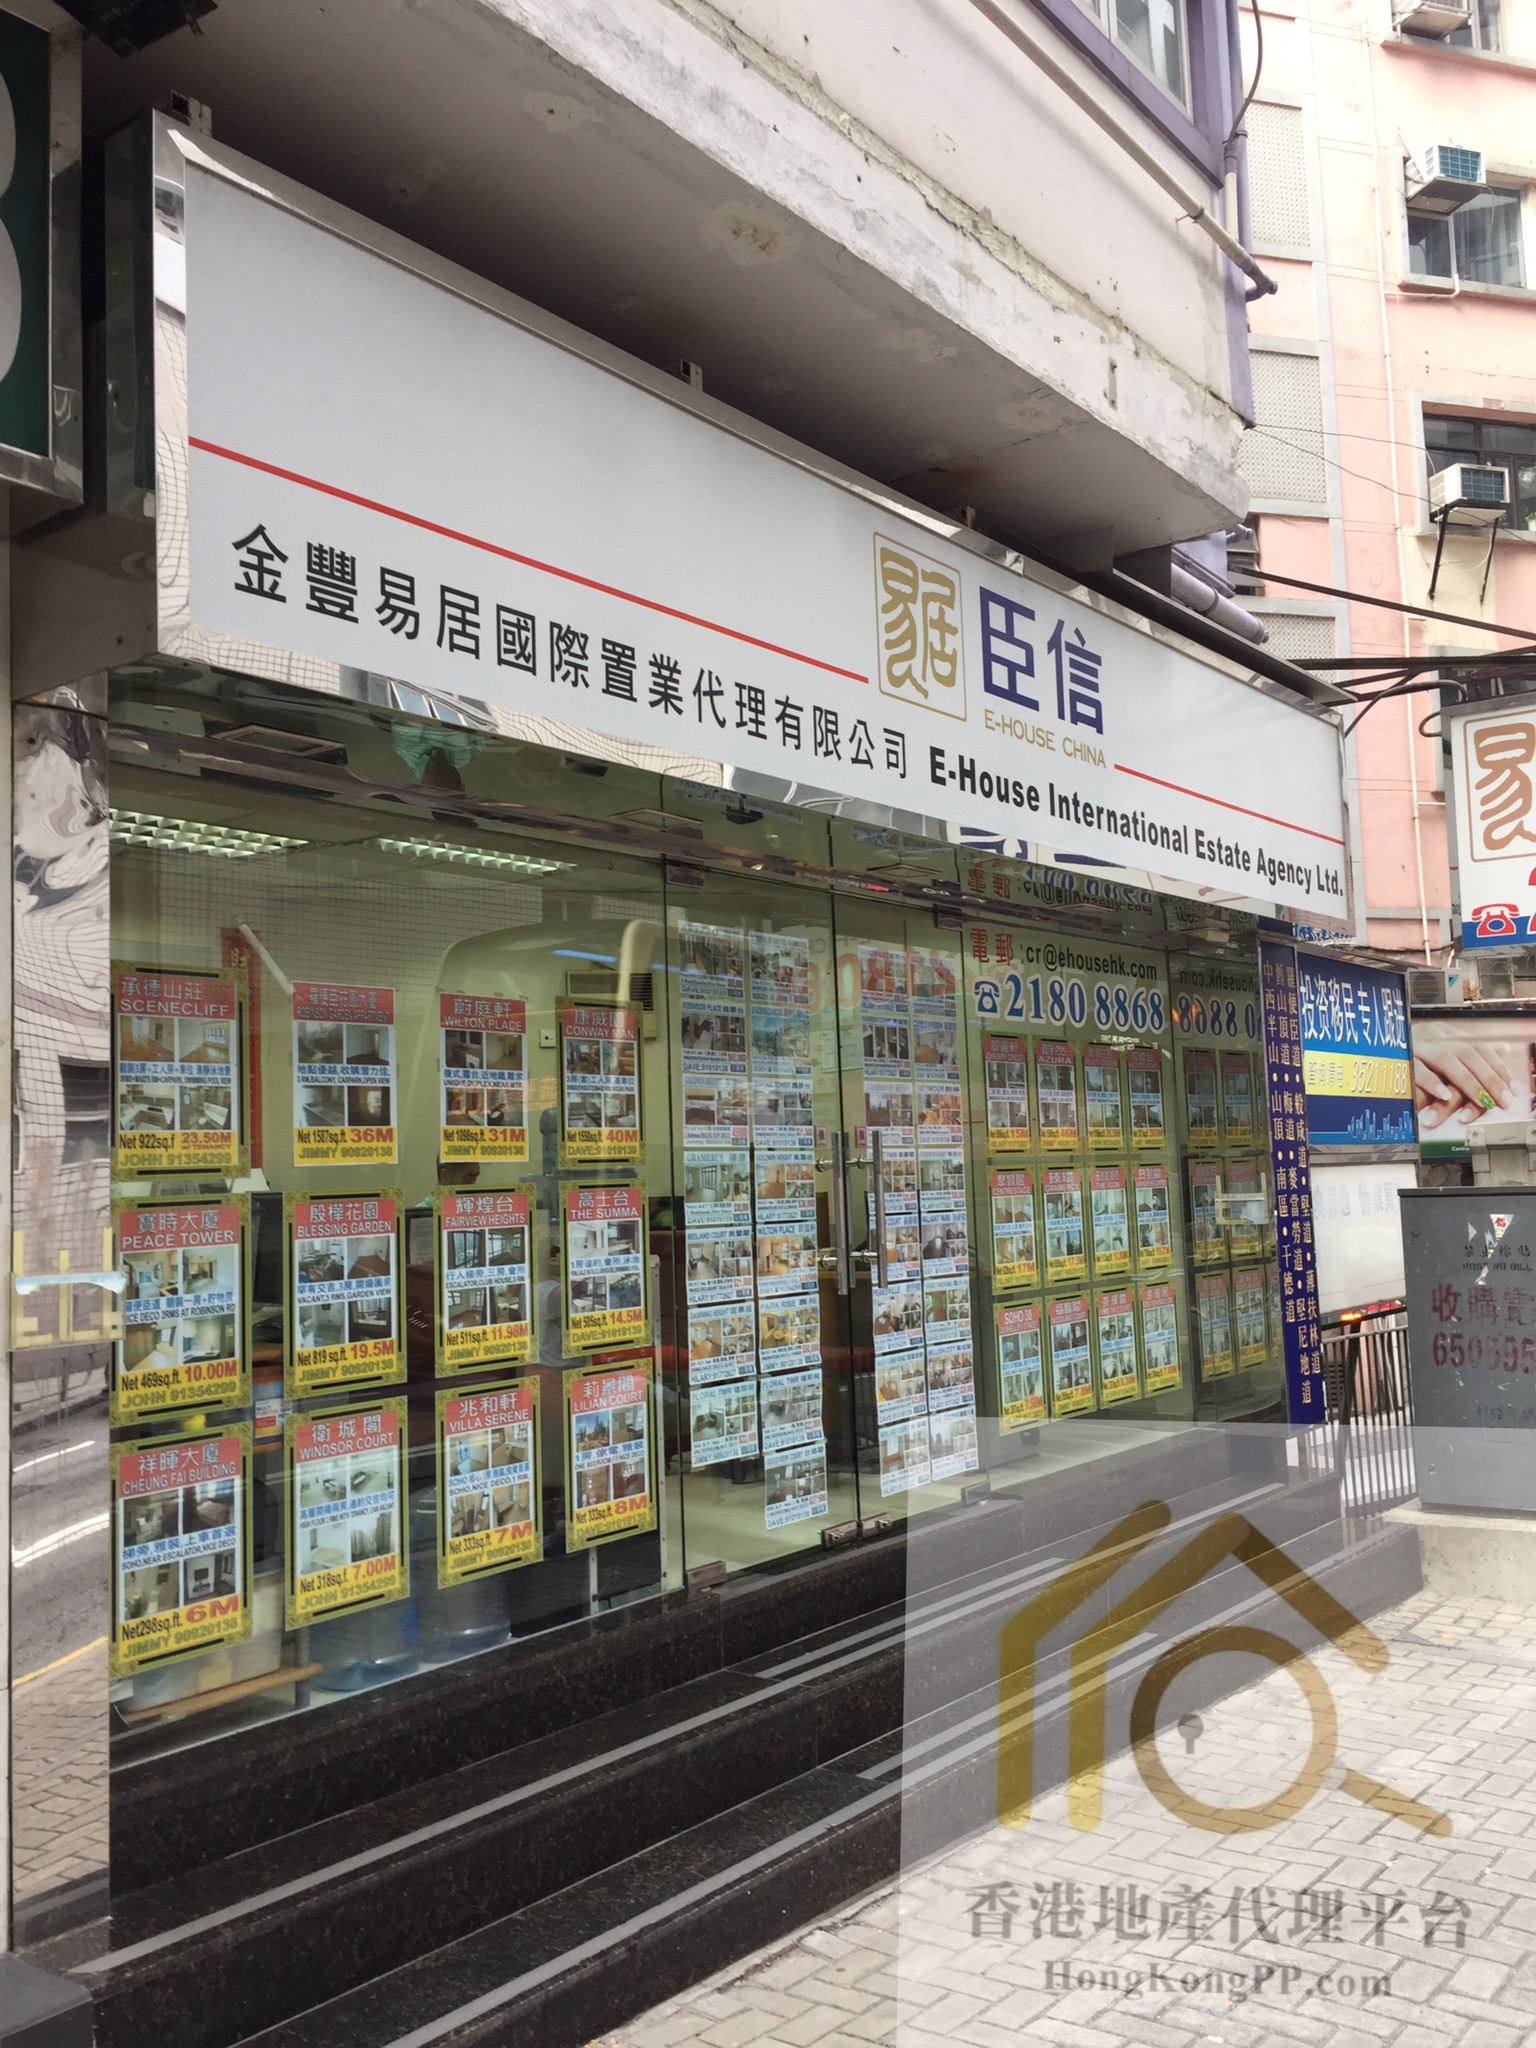 地產代理公司 Estate Agent: 金豐易居國際置業